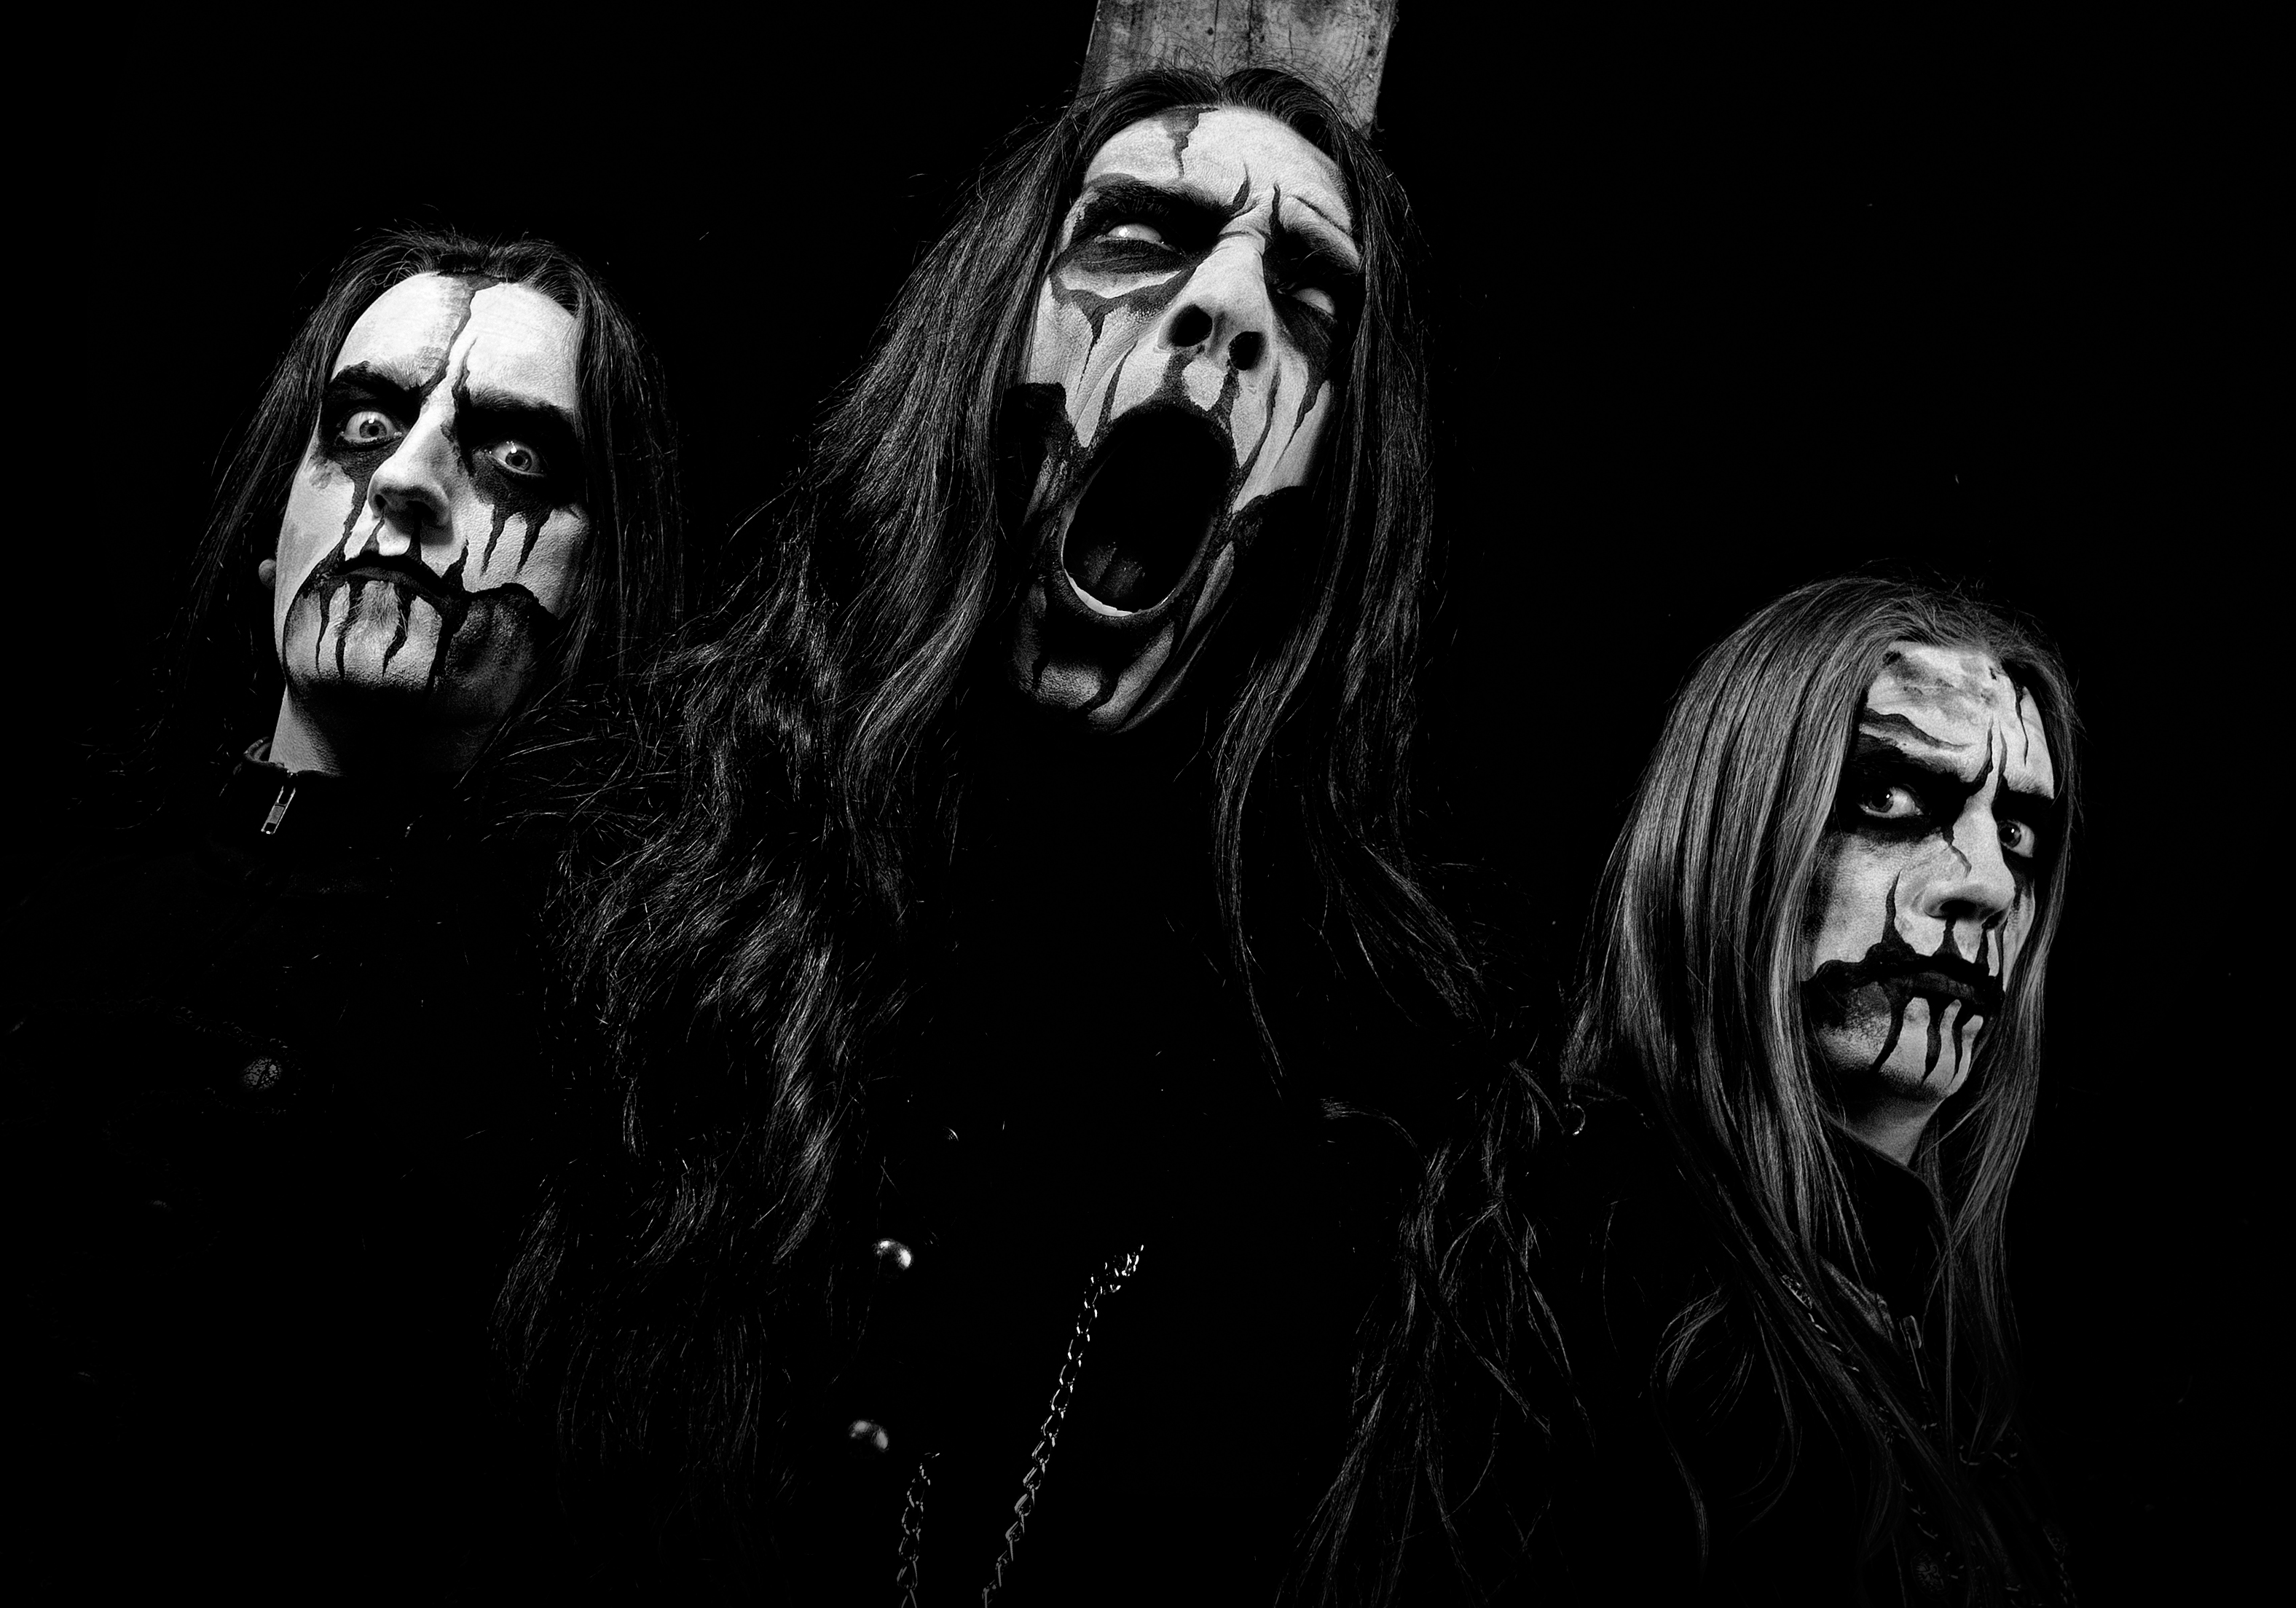 Слушать черные смерть. Black Metal группа xwmcndjsjjdjdjrjd.